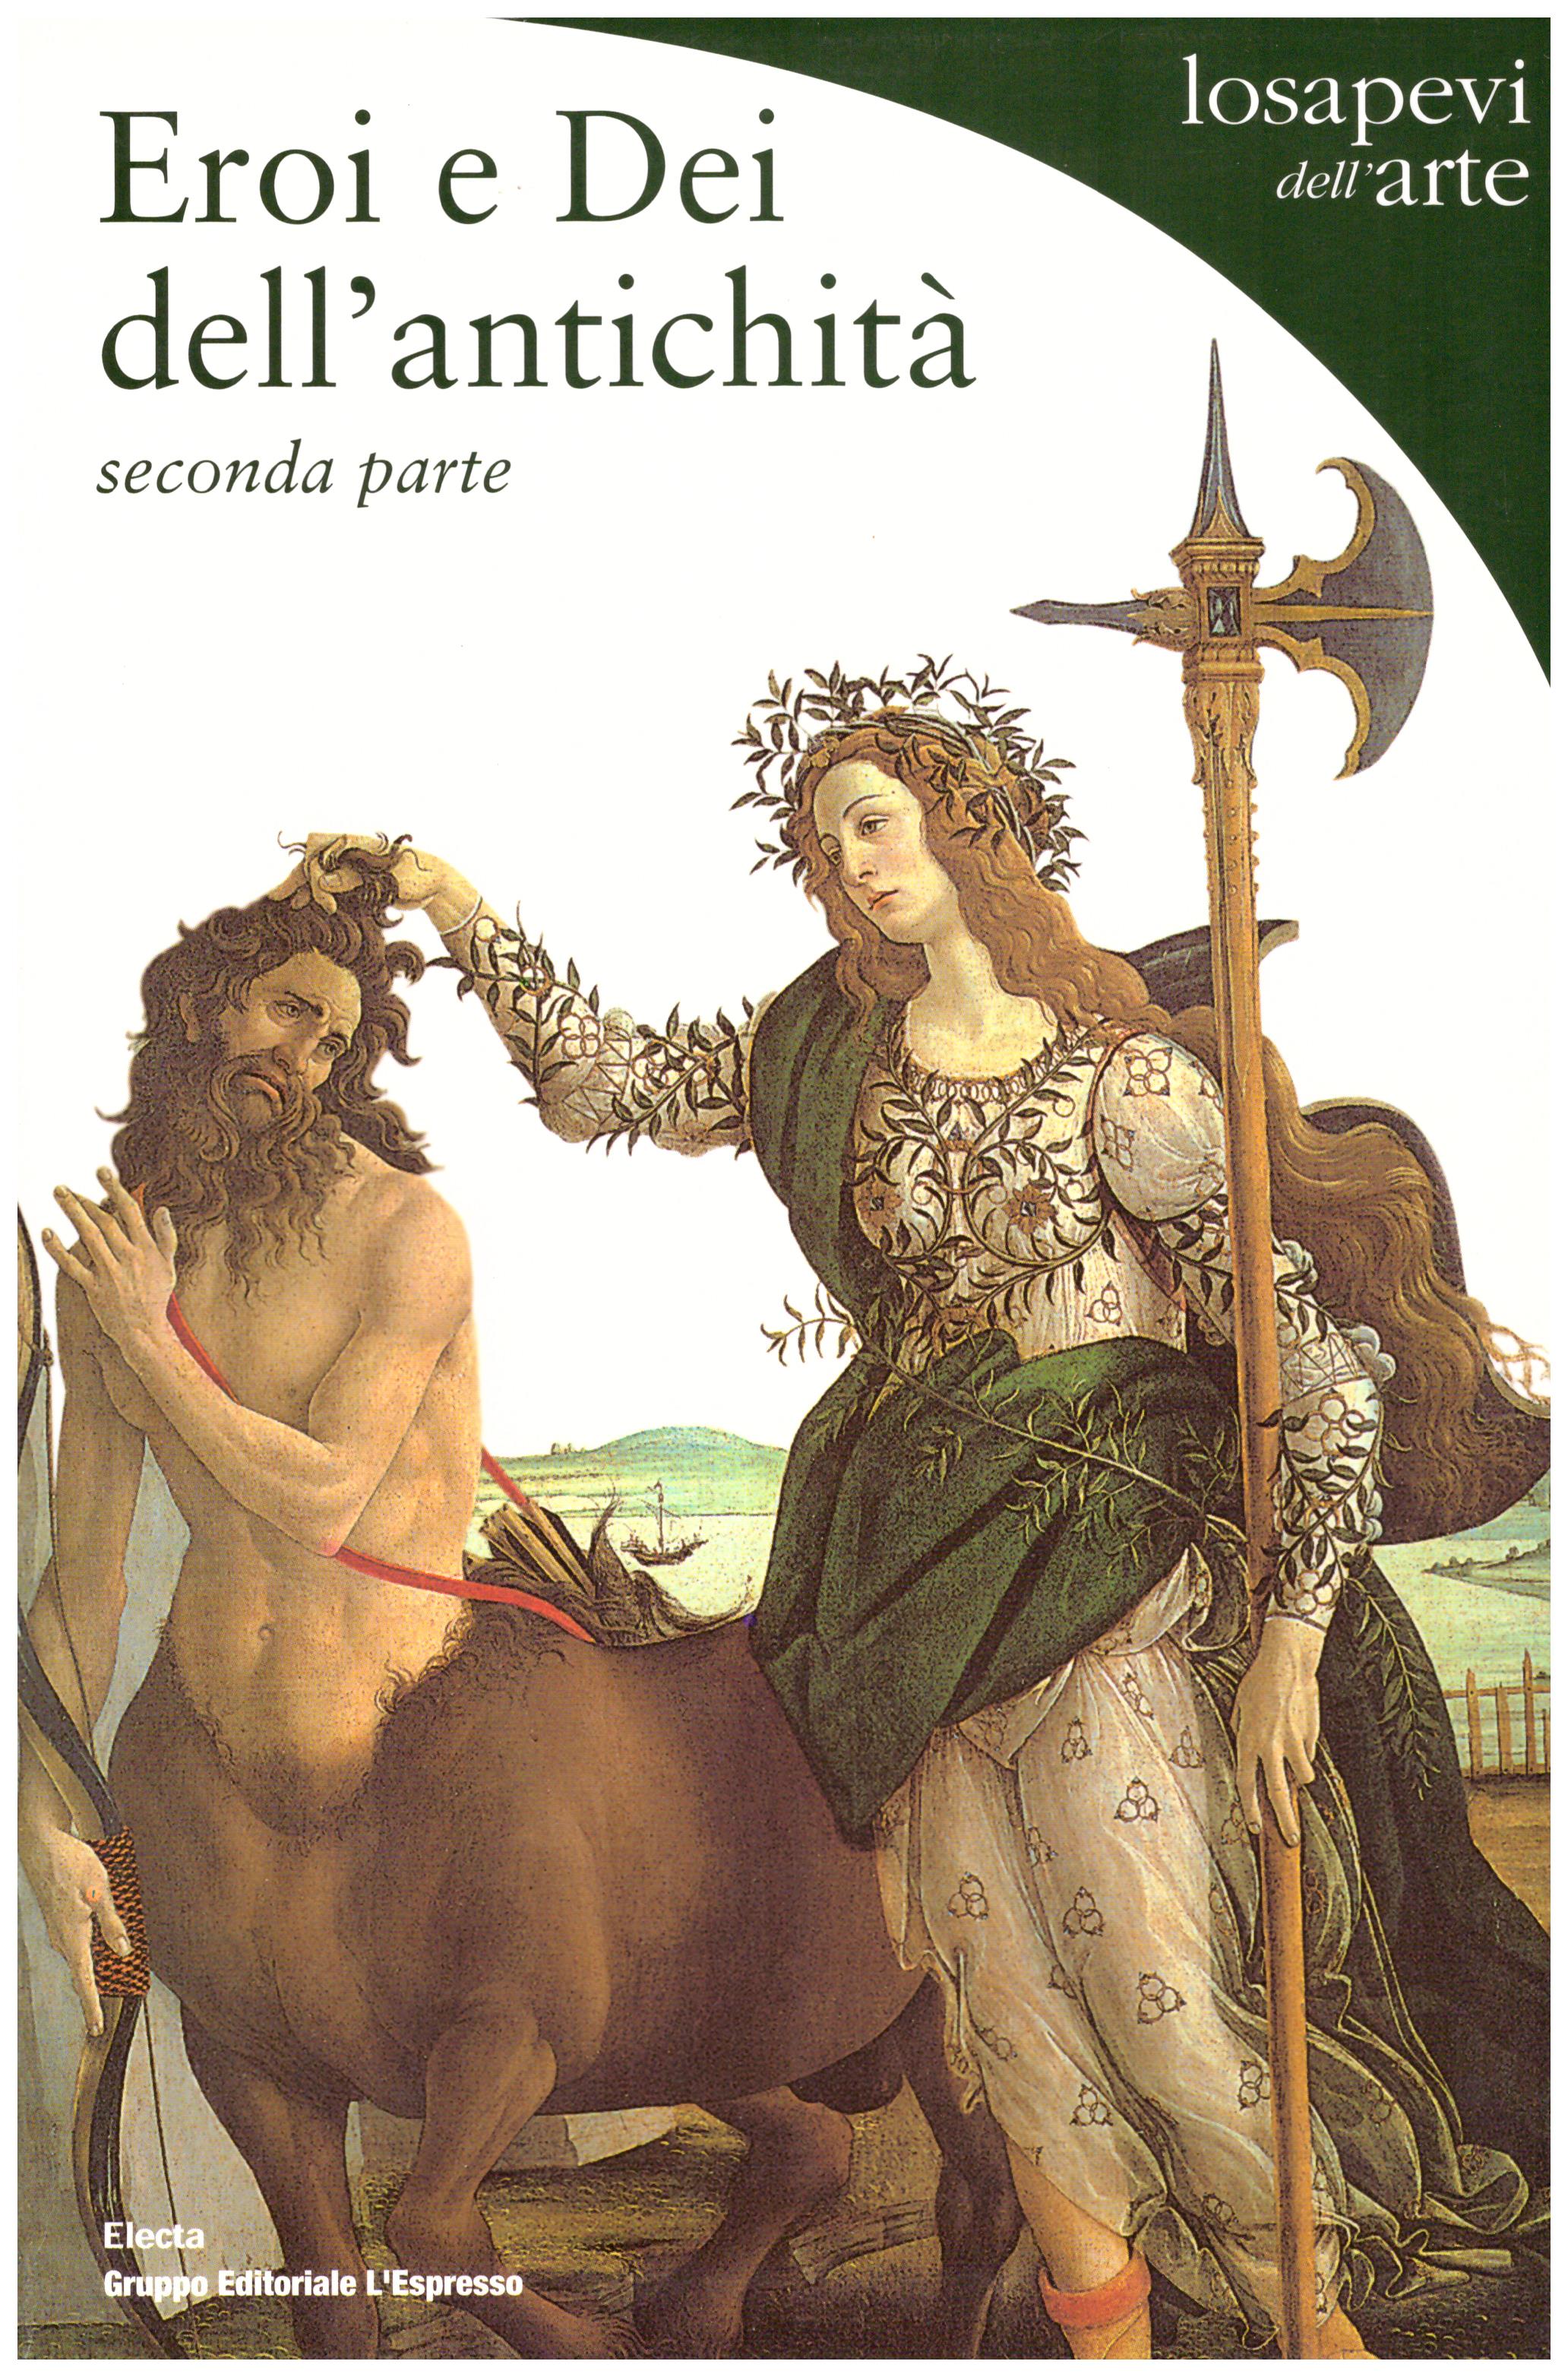 Eroi e Dei dell’antichità. Vol. I e II. Collana: Losapevi dell’arte.